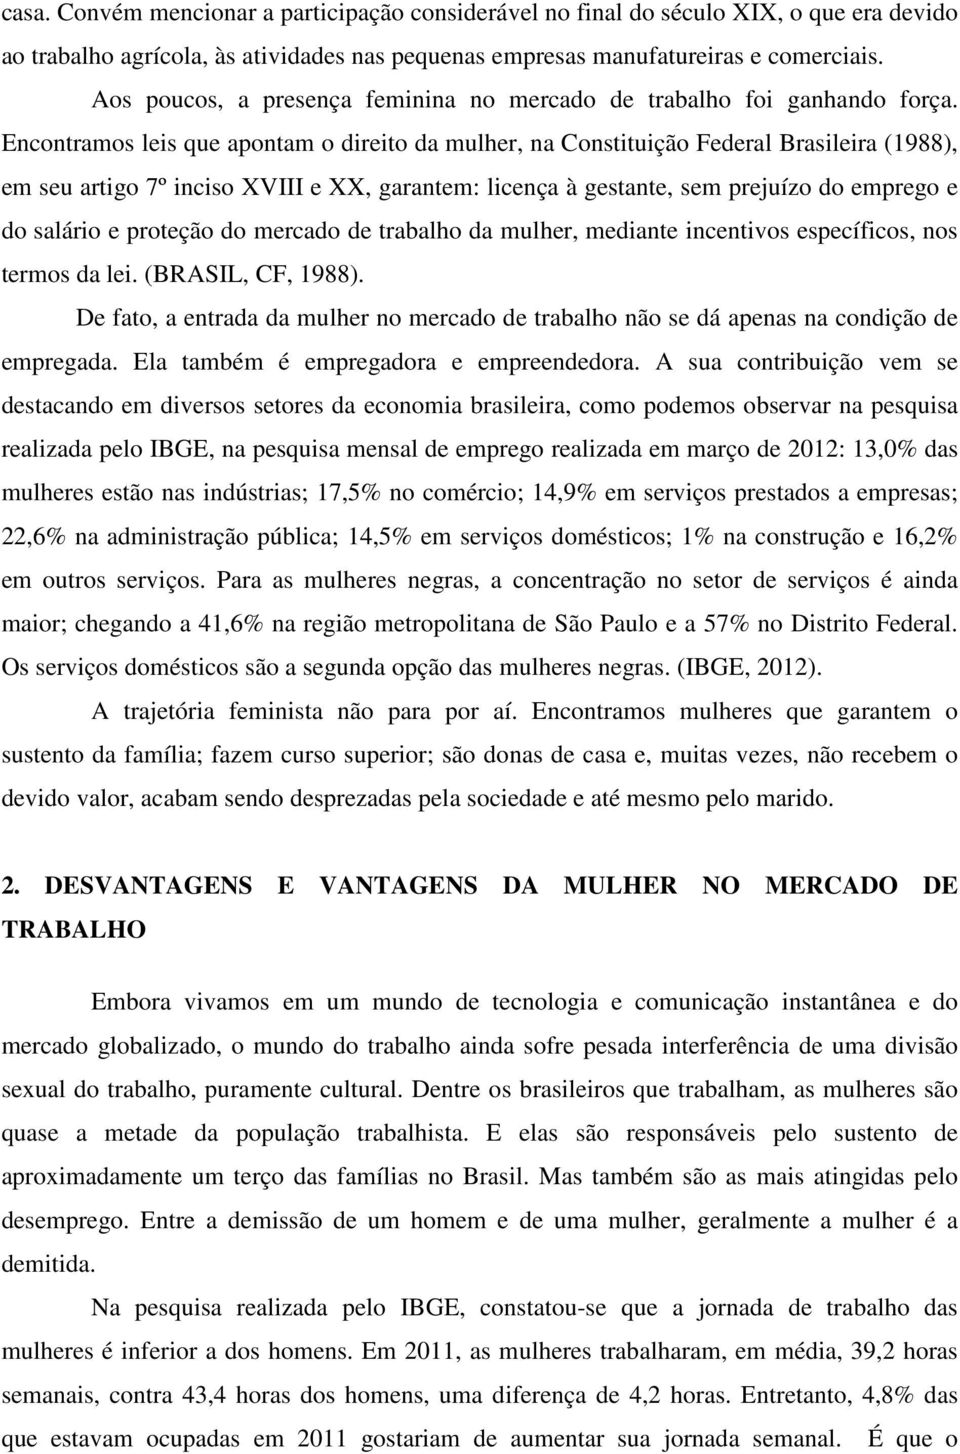 Encontramos leis que apontam o direito da mulher, na Constituição Federal Brasileira (1988), em seu artigo 7º inciso XVIII e XX, garantem: licença à gestante, sem prejuízo do emprego e do salário e